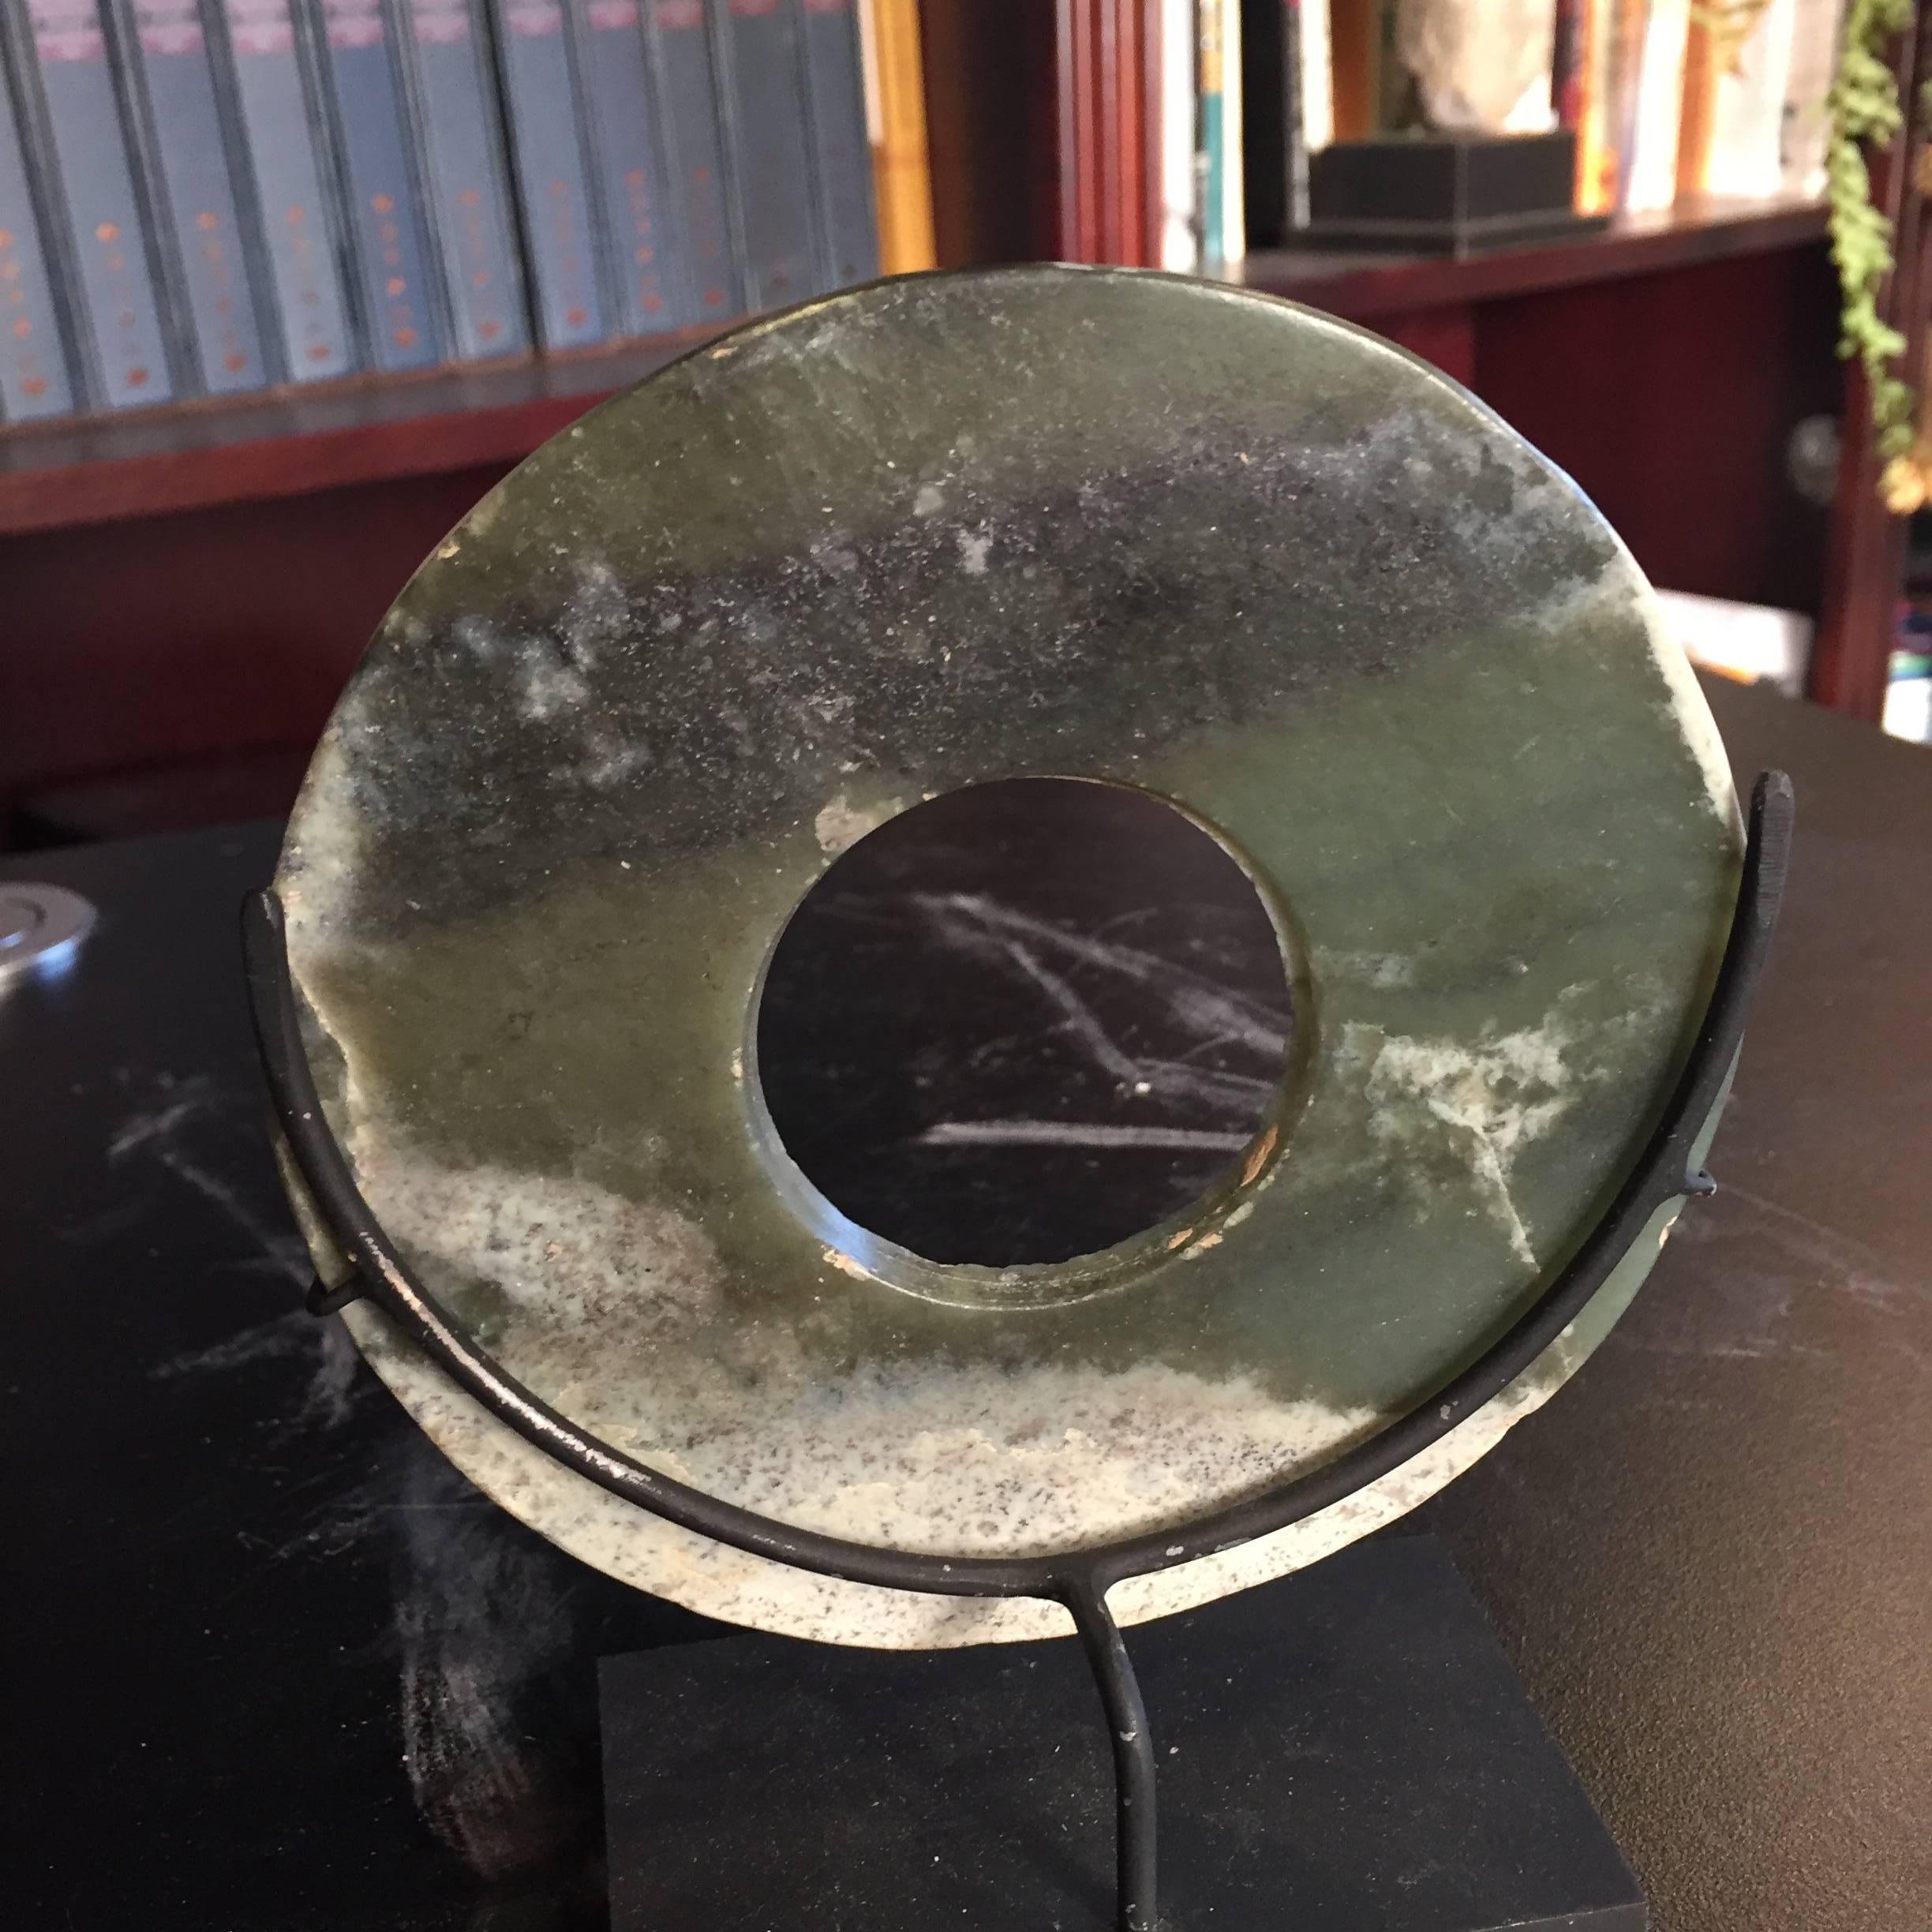 Authentische Jade Bi Disc aus dem alten China 4000 Jahre alt (18. Jahrhundert und früher)